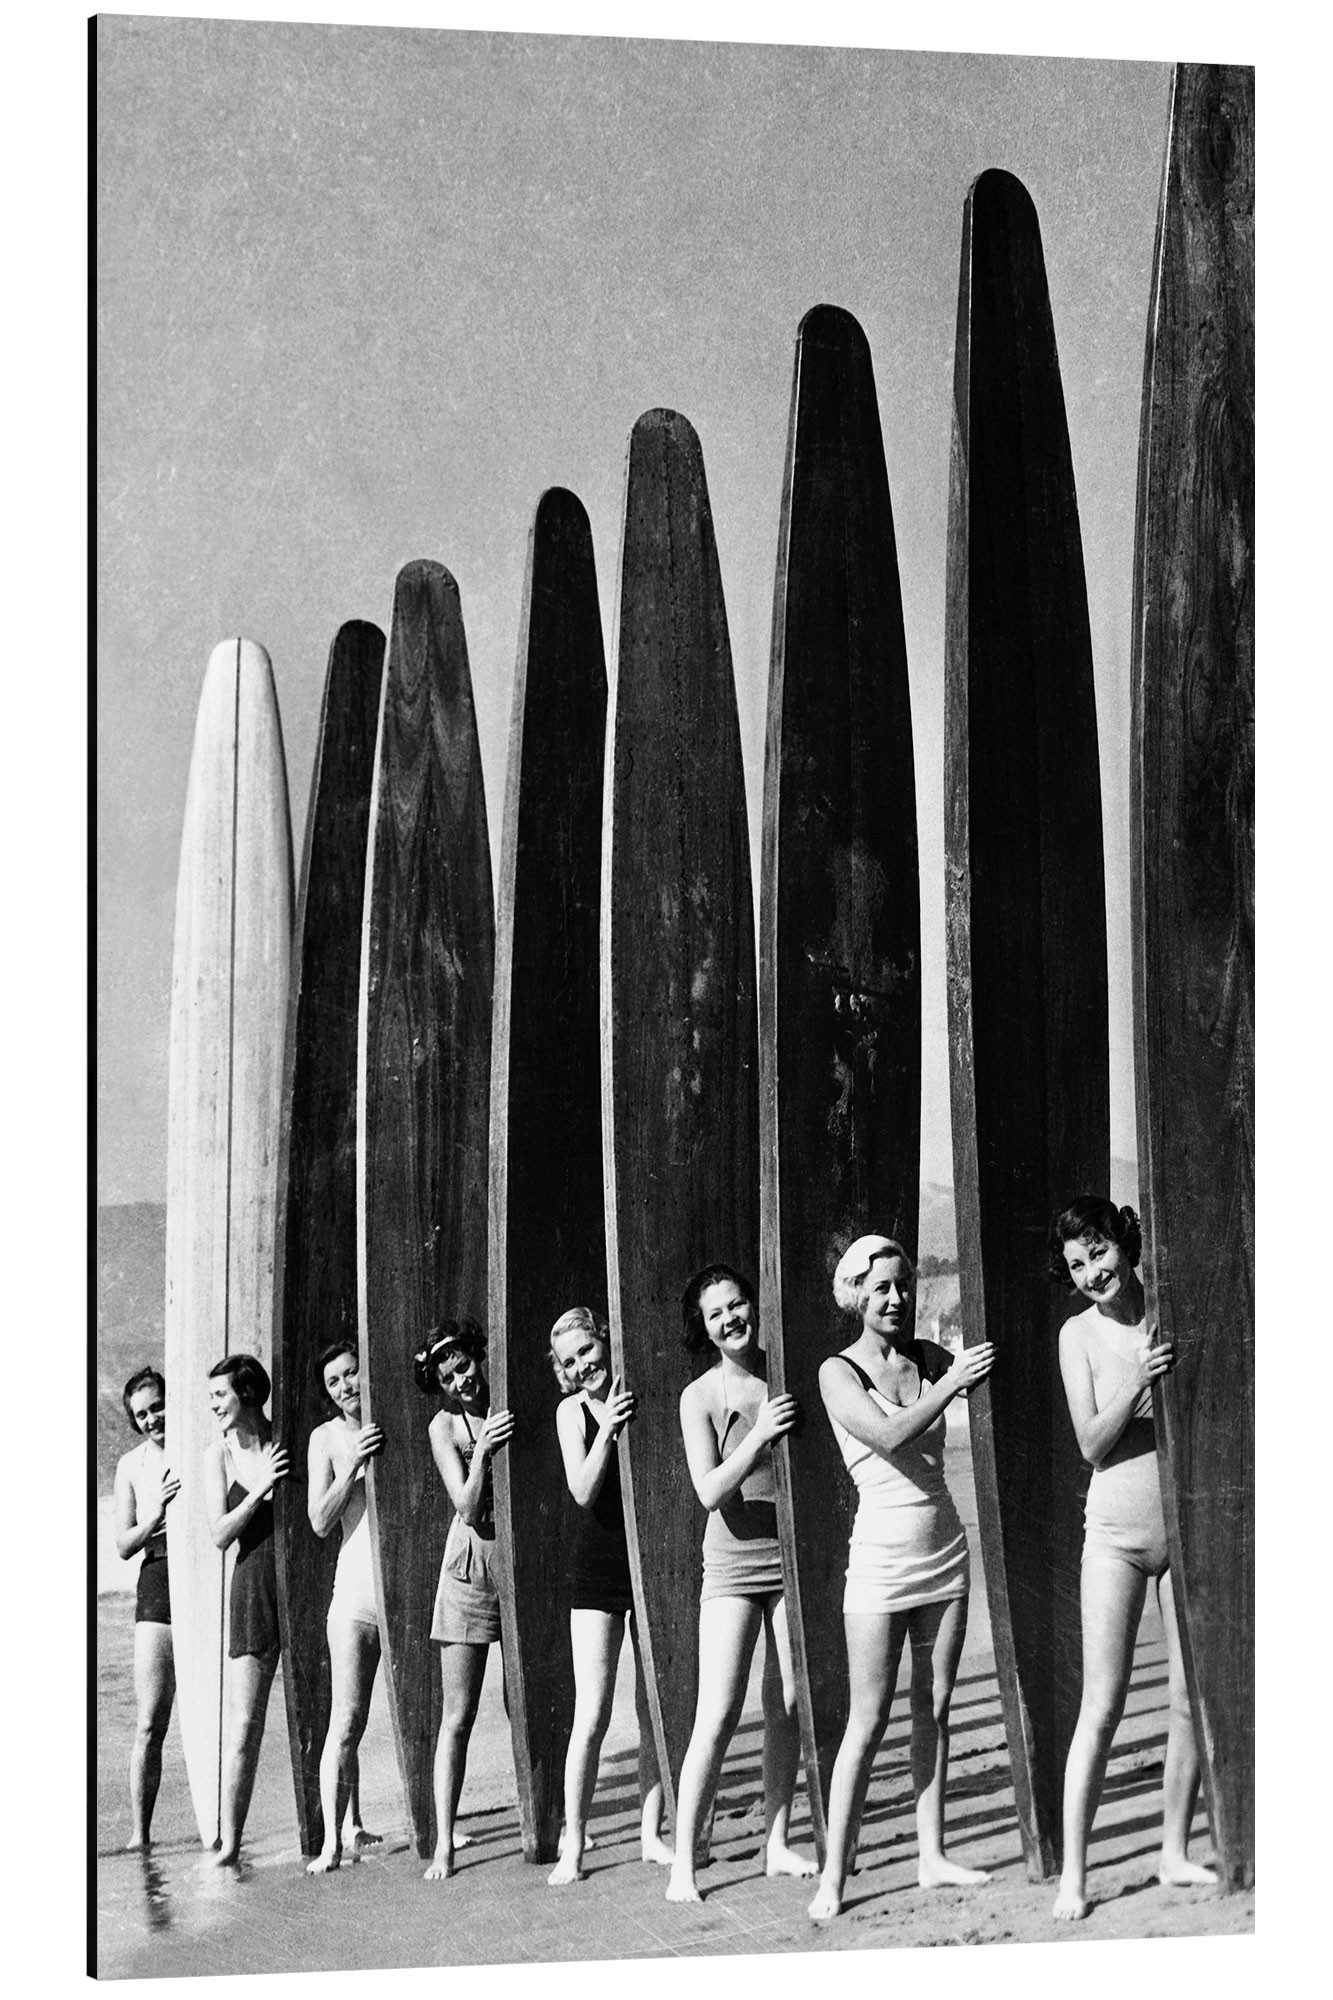 Posterlounge Alu-Dibond-Druck Art Couture, Vintage Surfer Girls, Vintage Fotografie